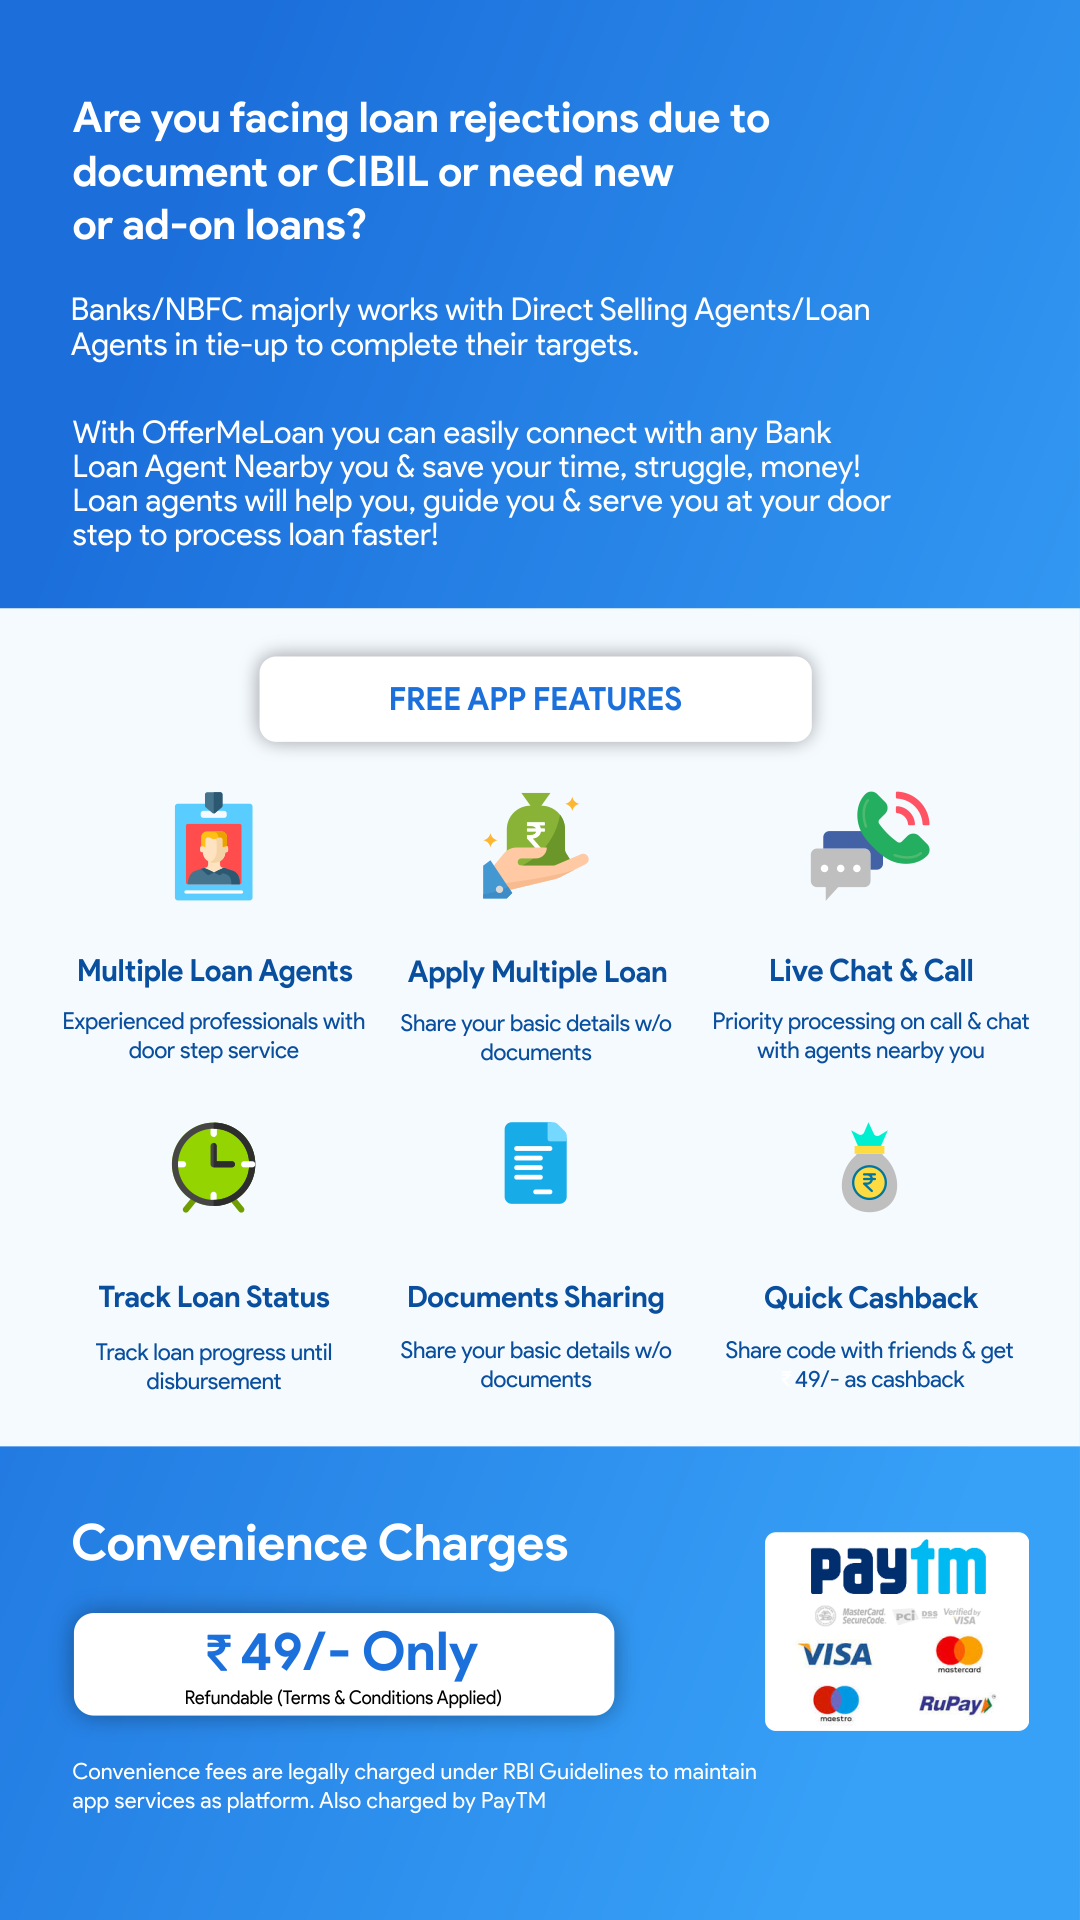 OfferMeLoan - Personal Loan, Business & Home Loans